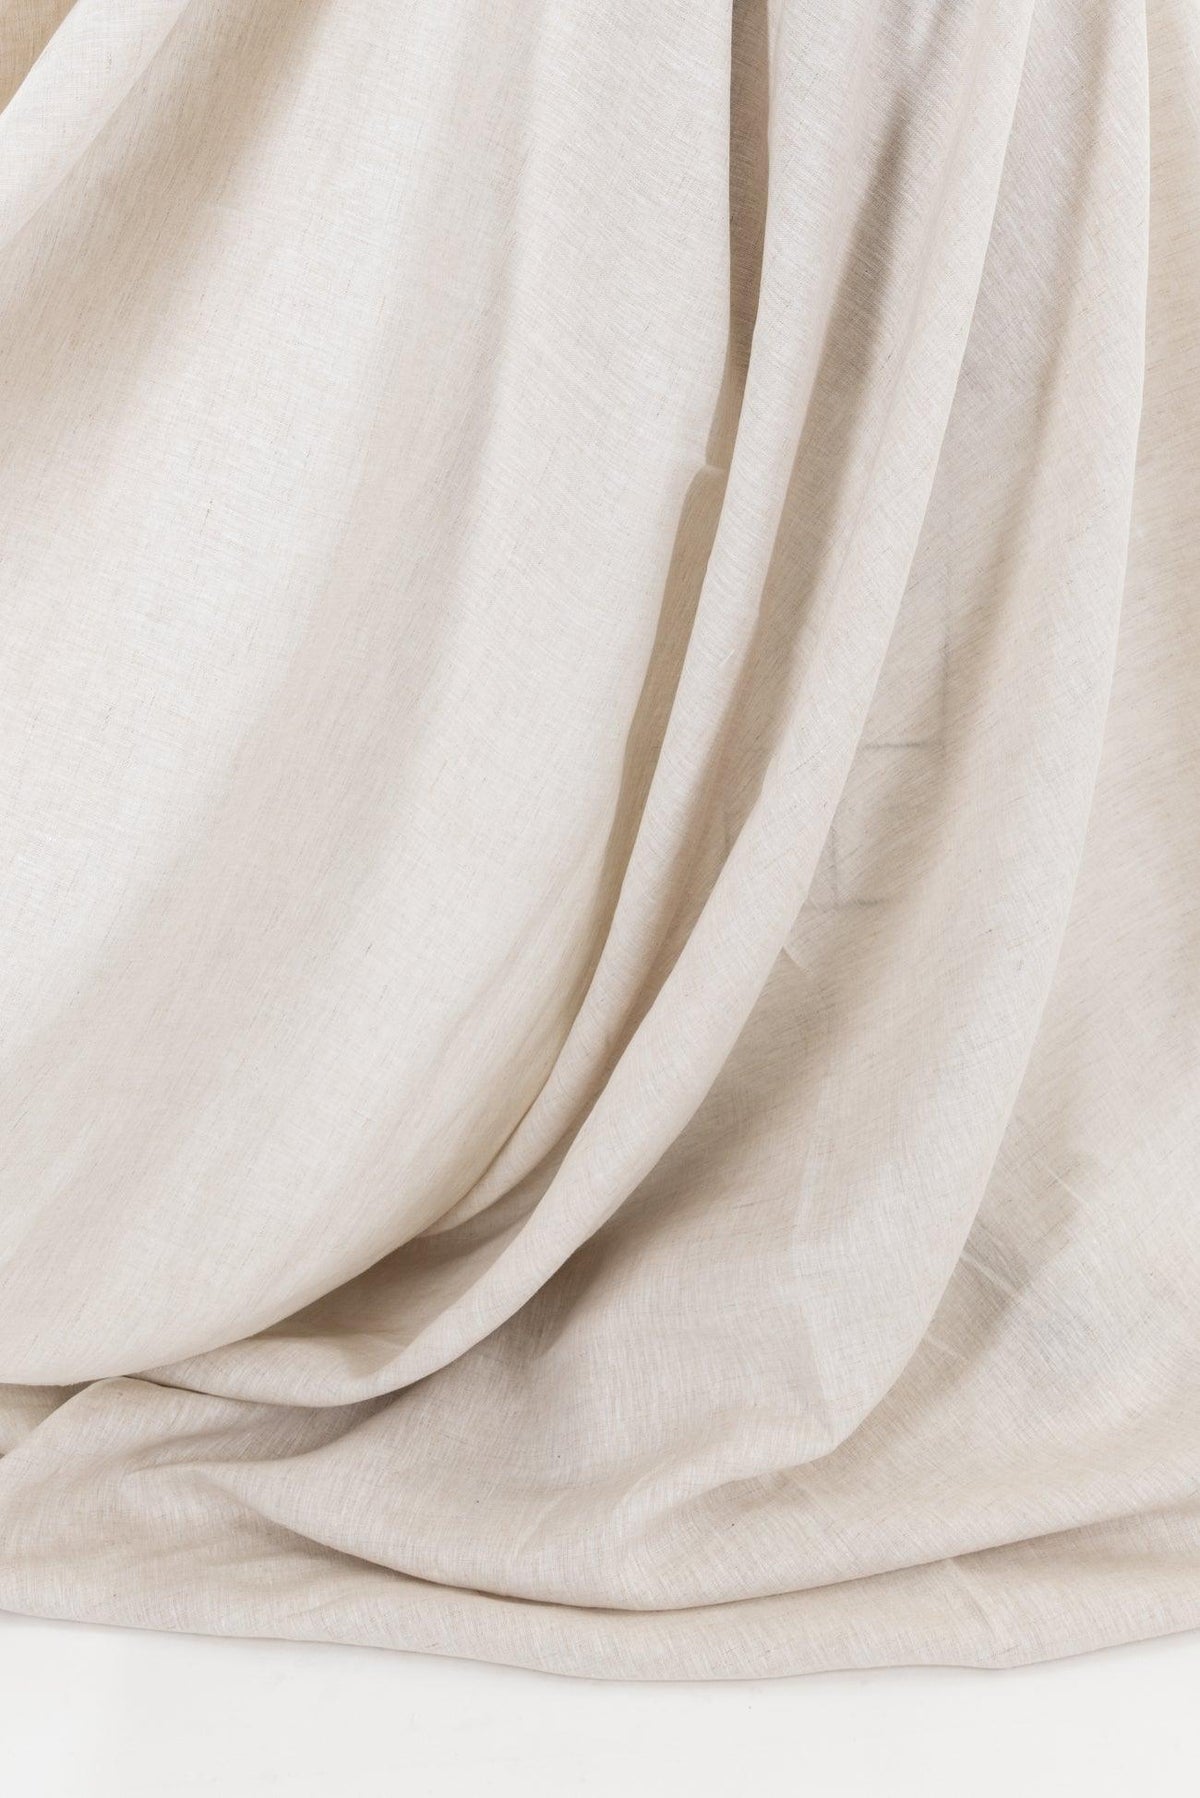 Parchment Euro Linen Woven - Marcy Tilton Fabrics